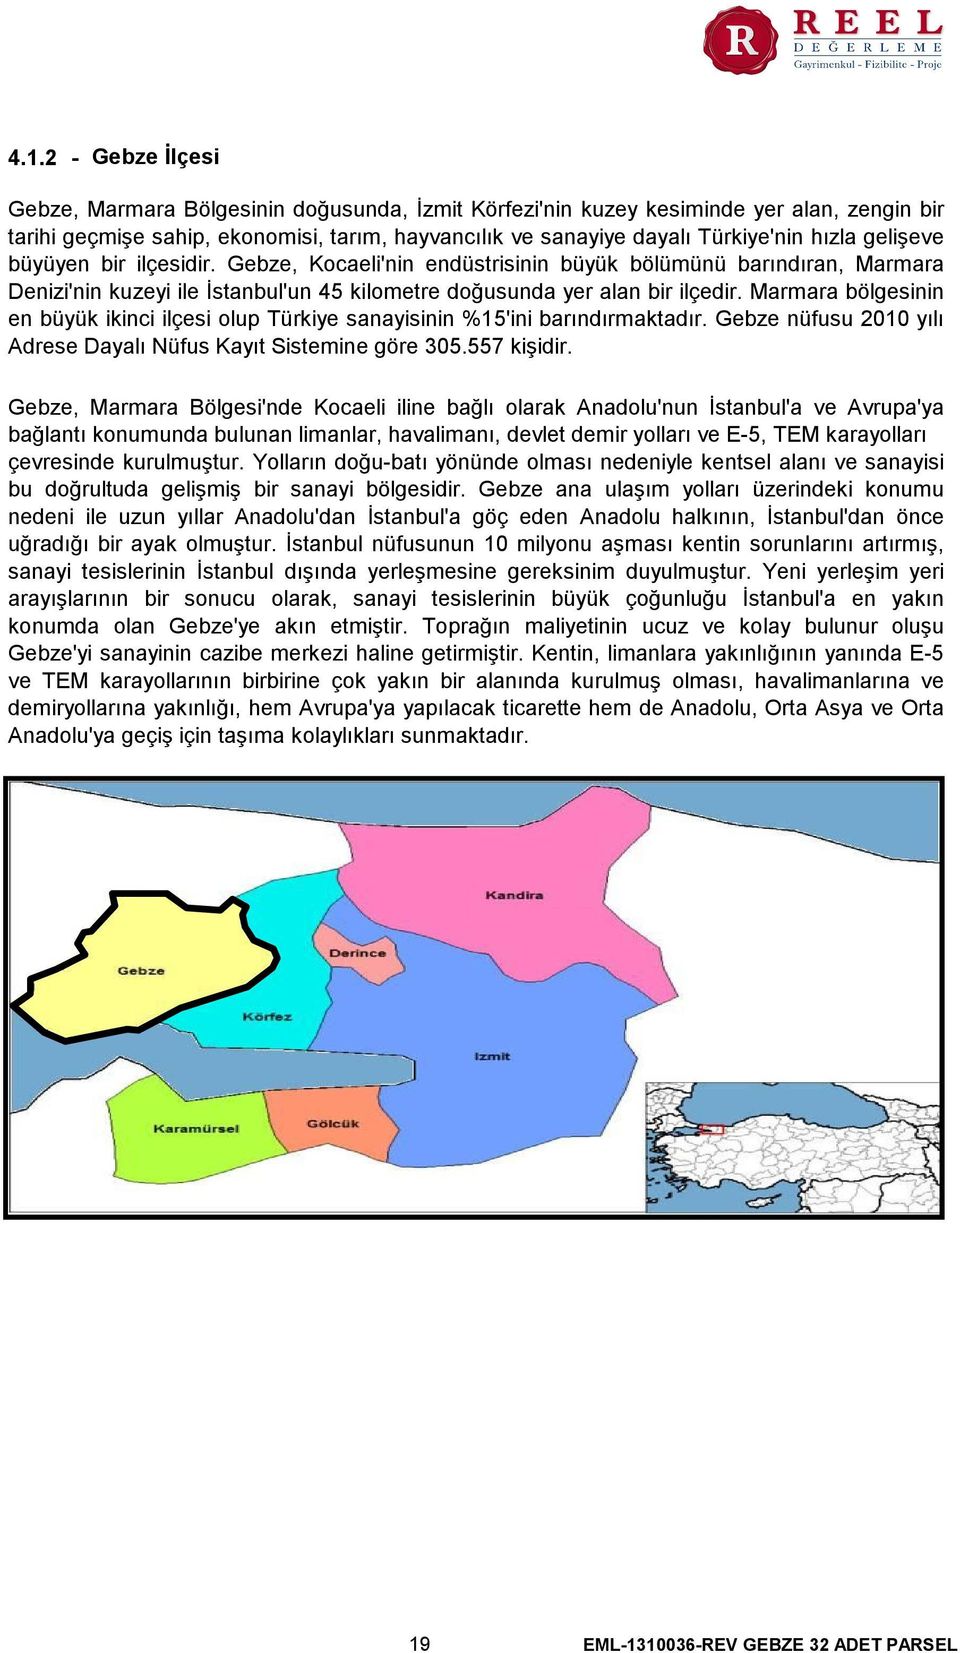 Marmara bölgesinin en büyük ikinci ilçesi olup Türkiye sanayisinin %15'ini barındırmaktadır. Gebze nüfusu 2010 yılı Adrese Dayalı Nüfus Kayıt Sistemine göre 305.557 kişidir.